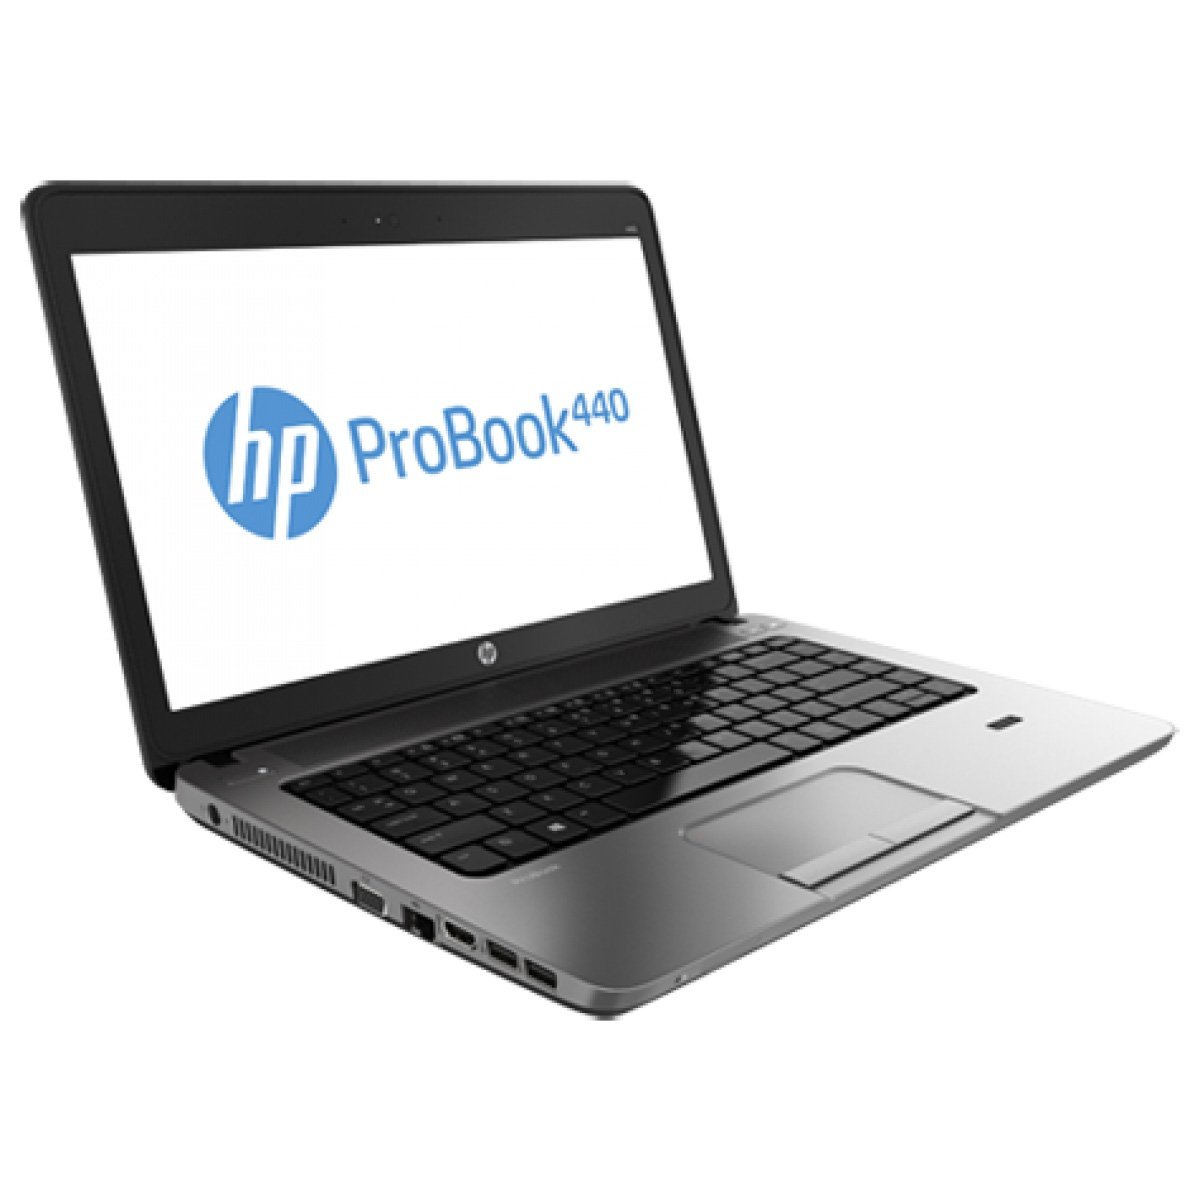 hp probook 440 g3 notebook (i5-6200/8gb/512gb/sd webcam720/dos), black